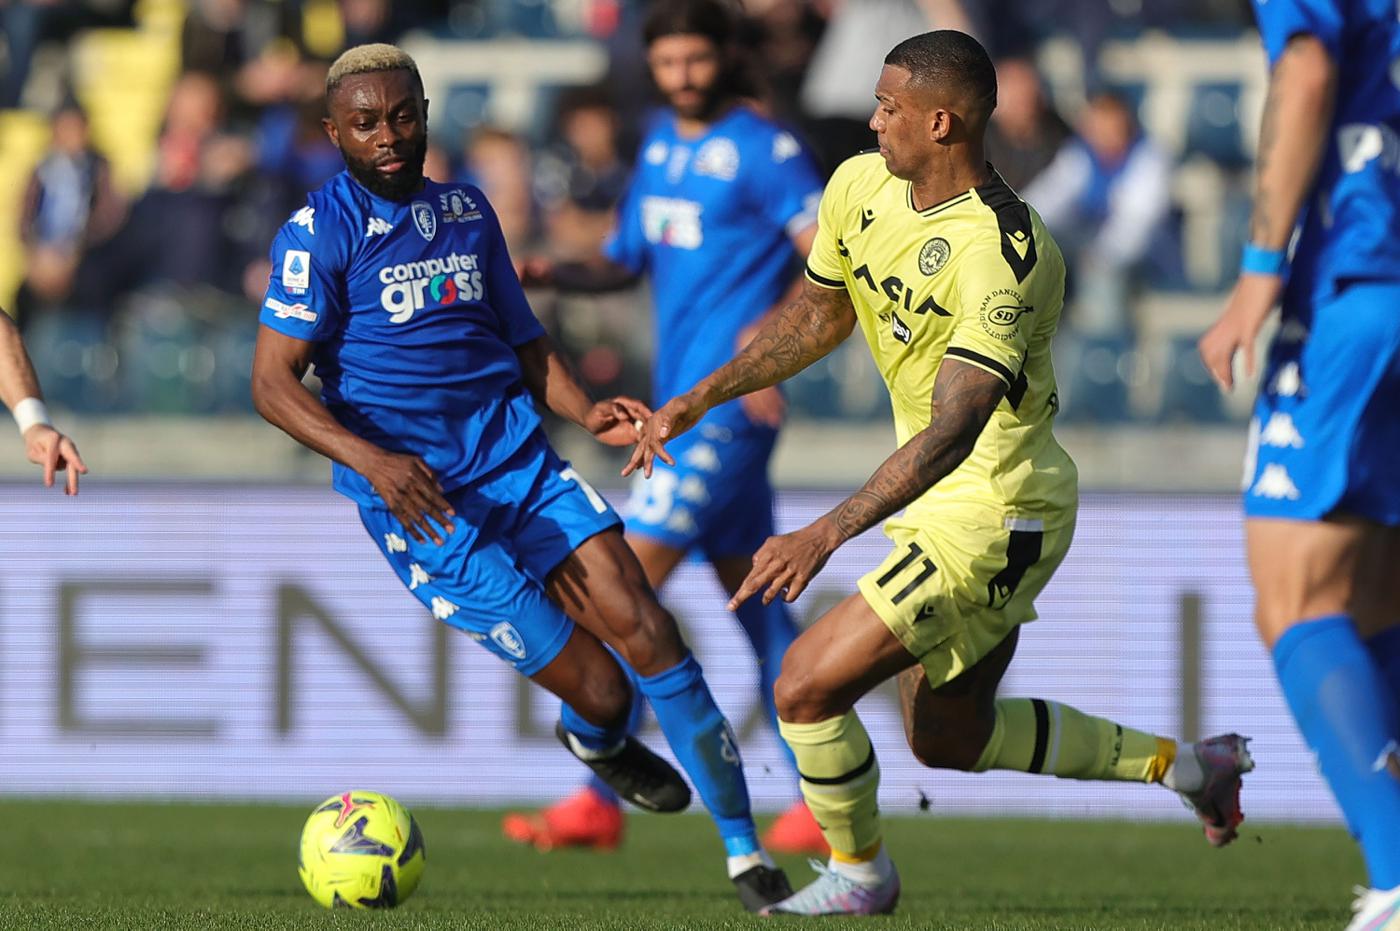 Empoli v Udinese - 0-1. Mistrzostwa Włoch, runda 26. Przegląd meczu, statystyki.